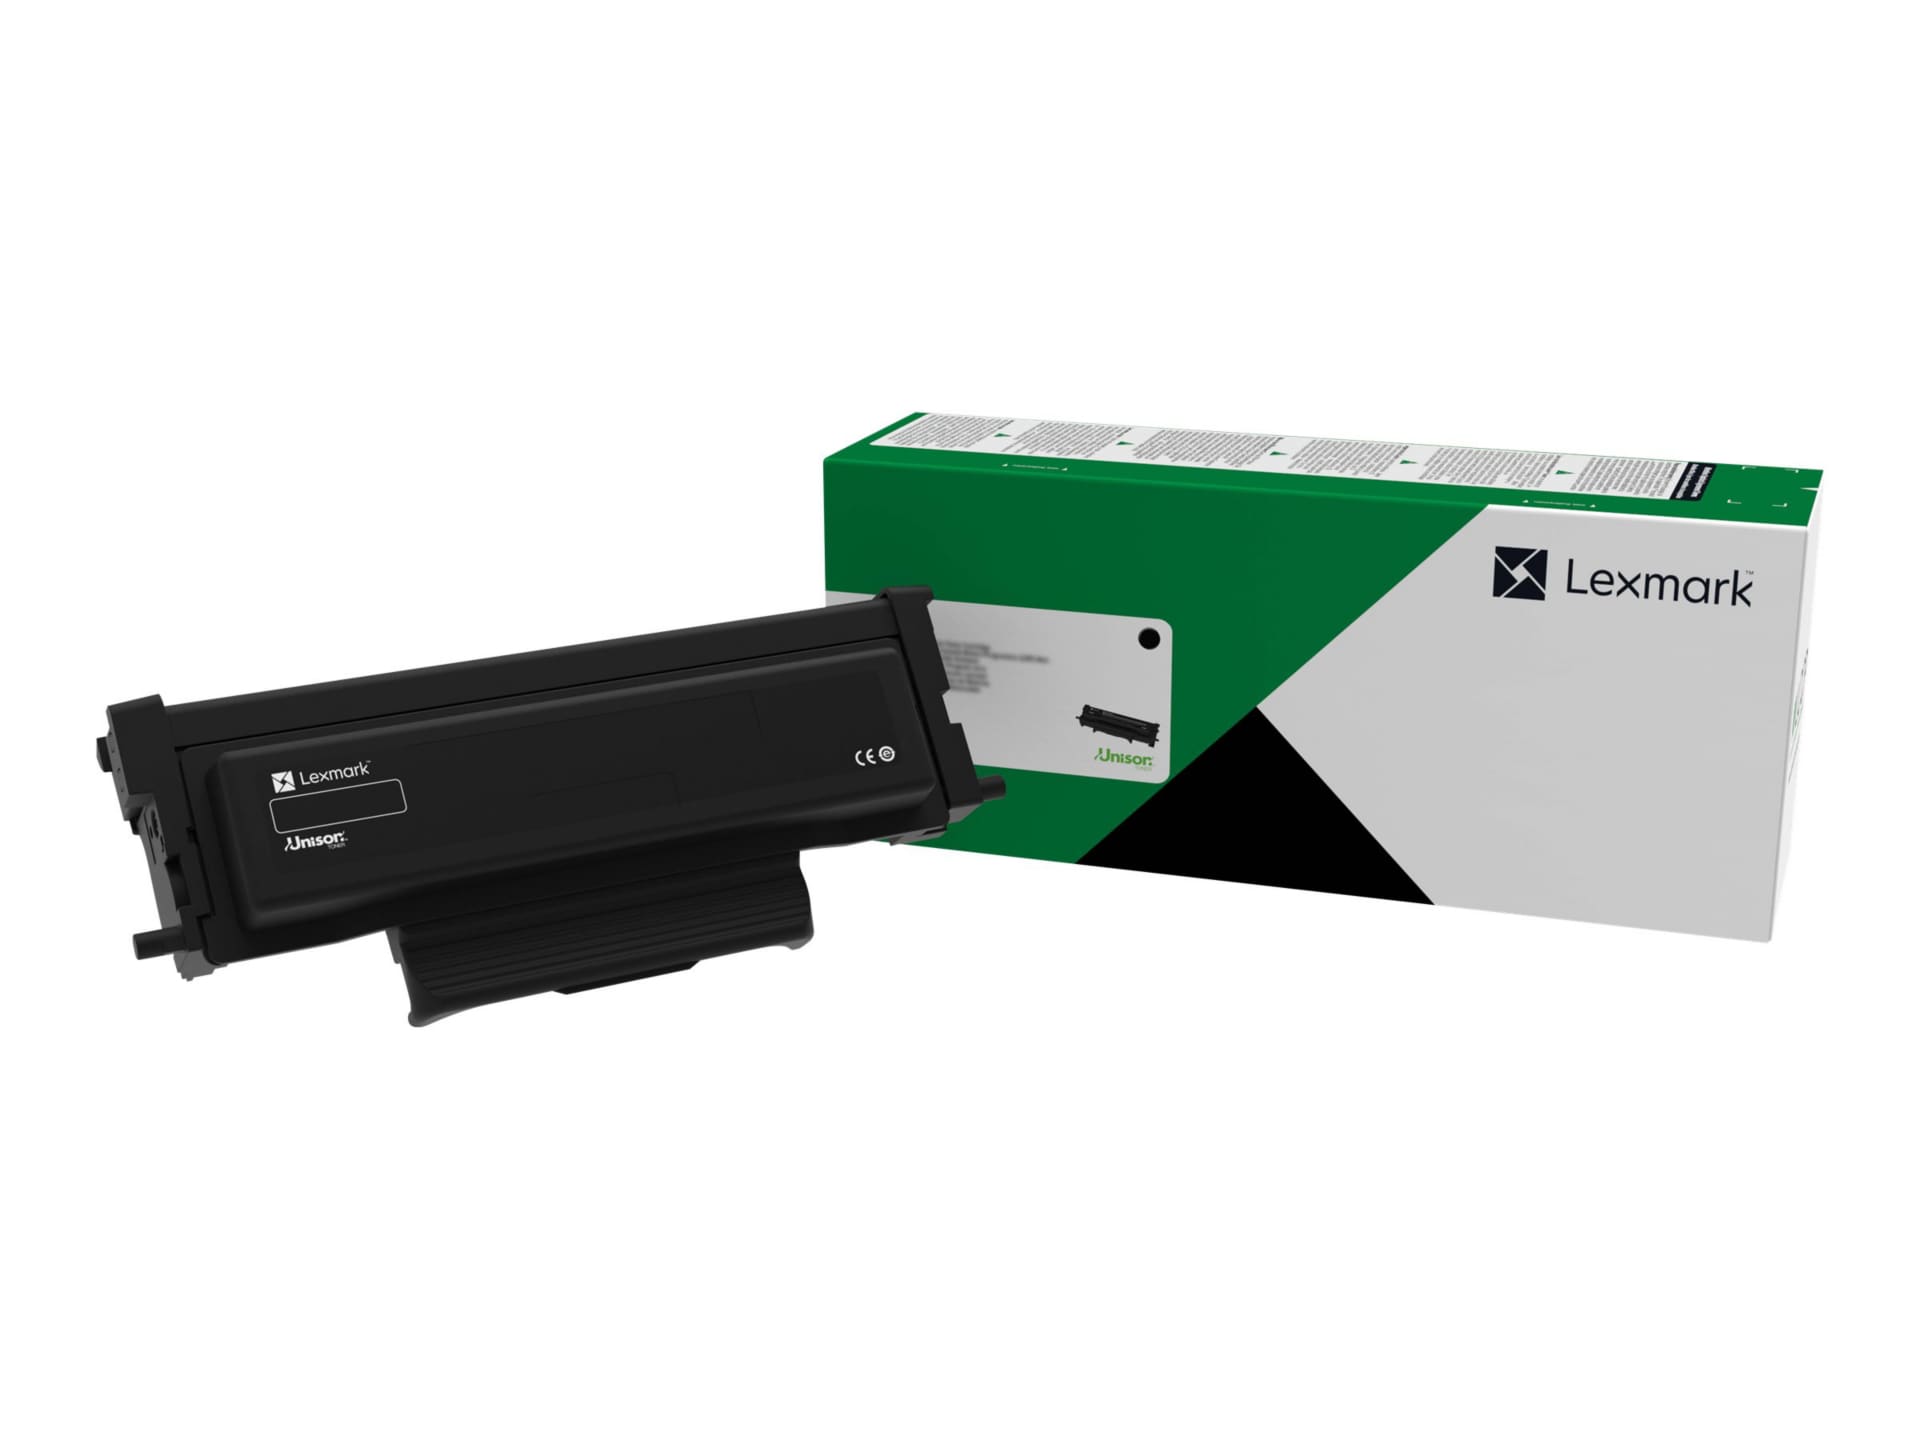 Lexmark B221000 Black Return Program Toner Cartridge for B2236dw Printer